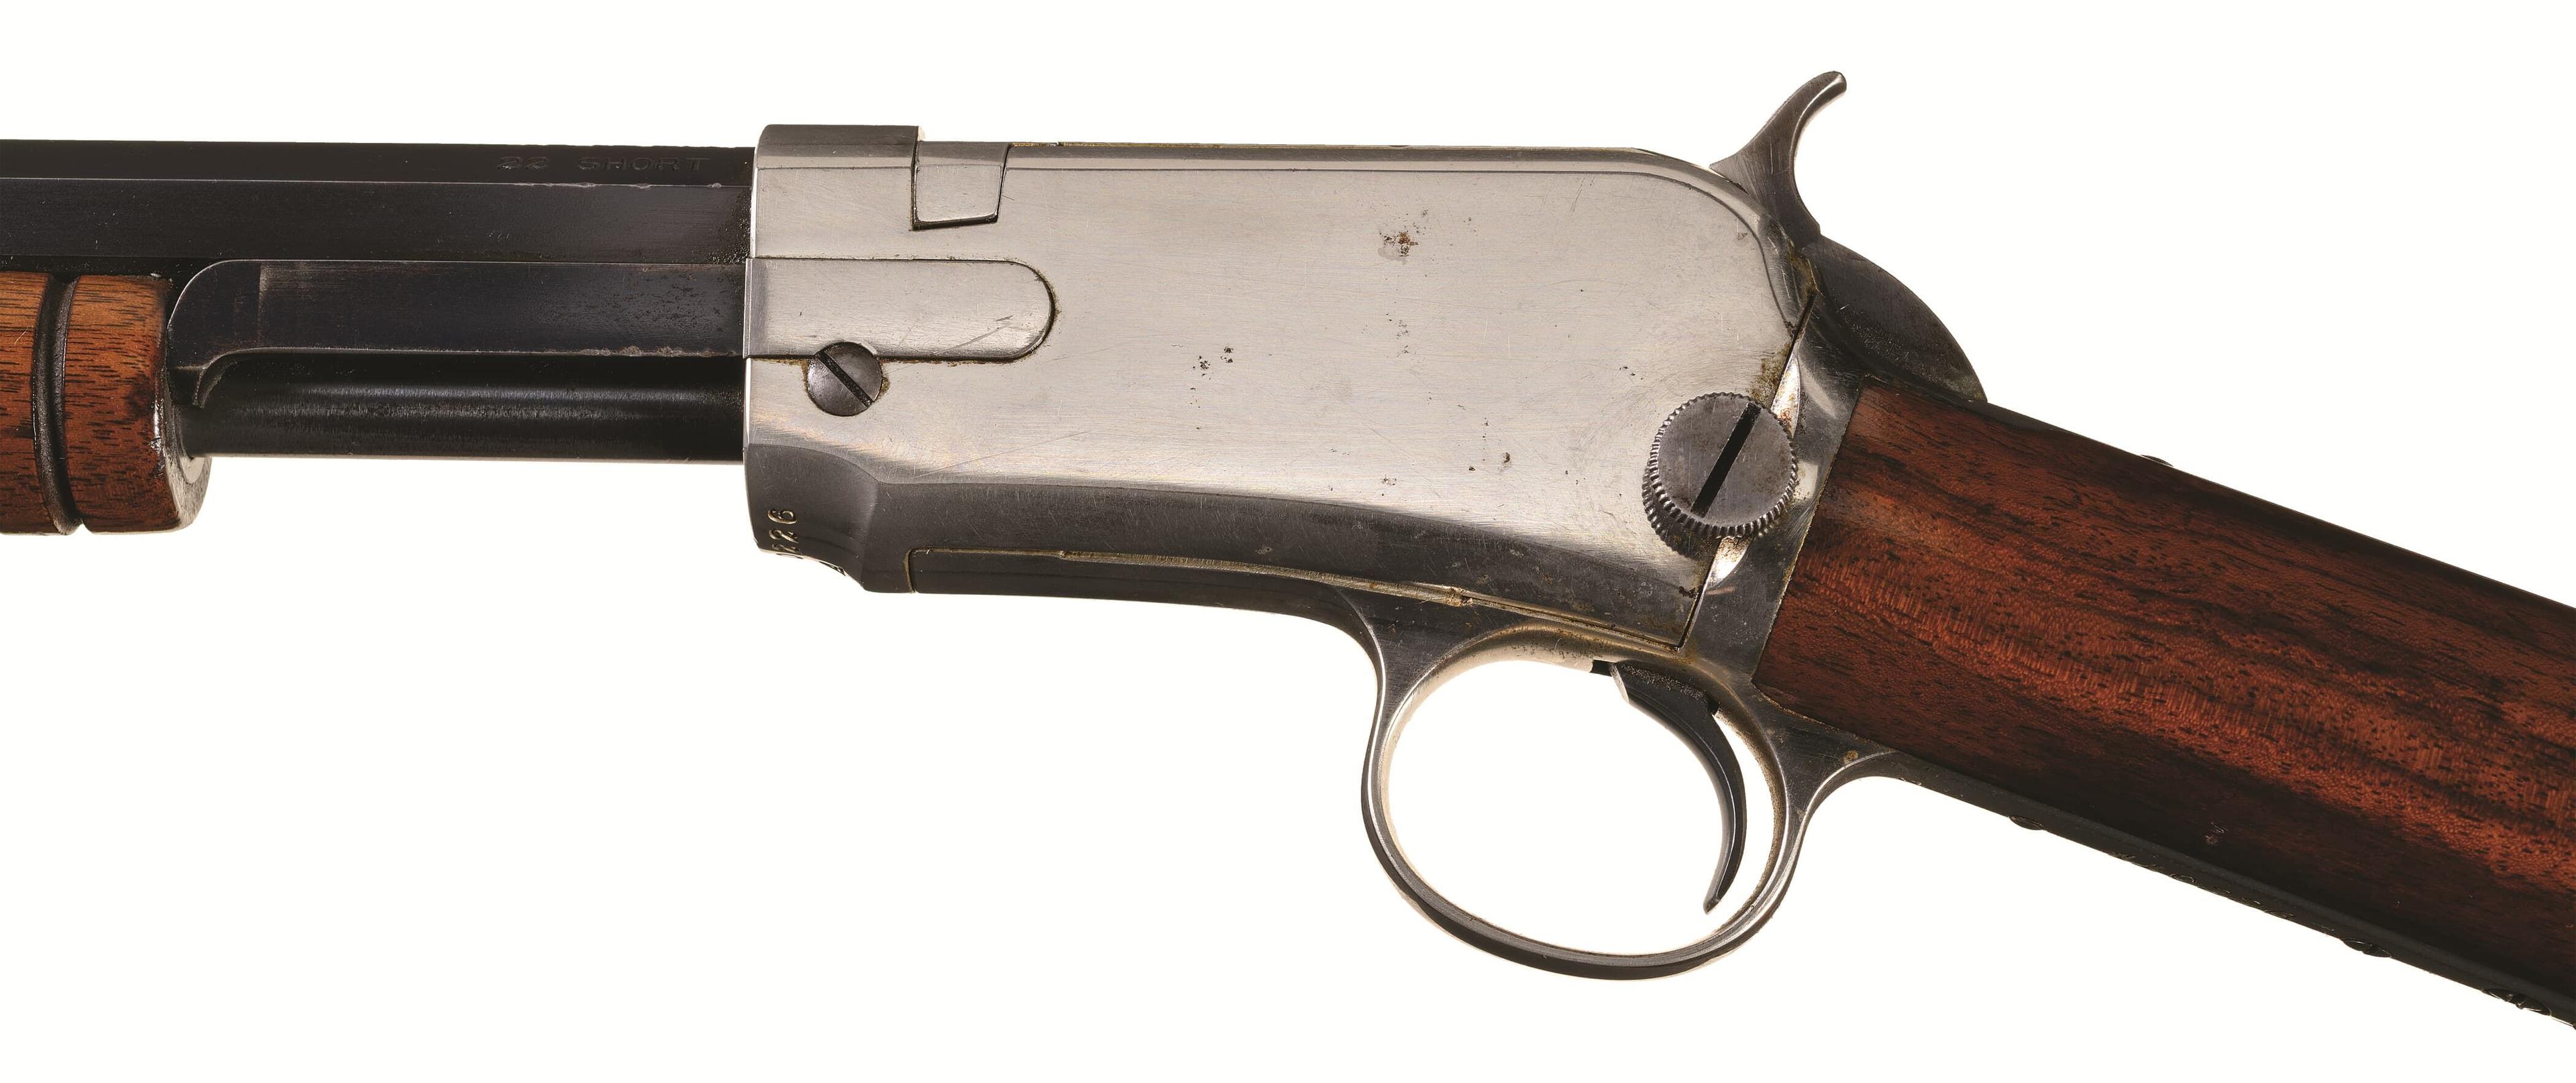 Special Order Nickel-Trimmed Model 1890 Slide Action Rifle